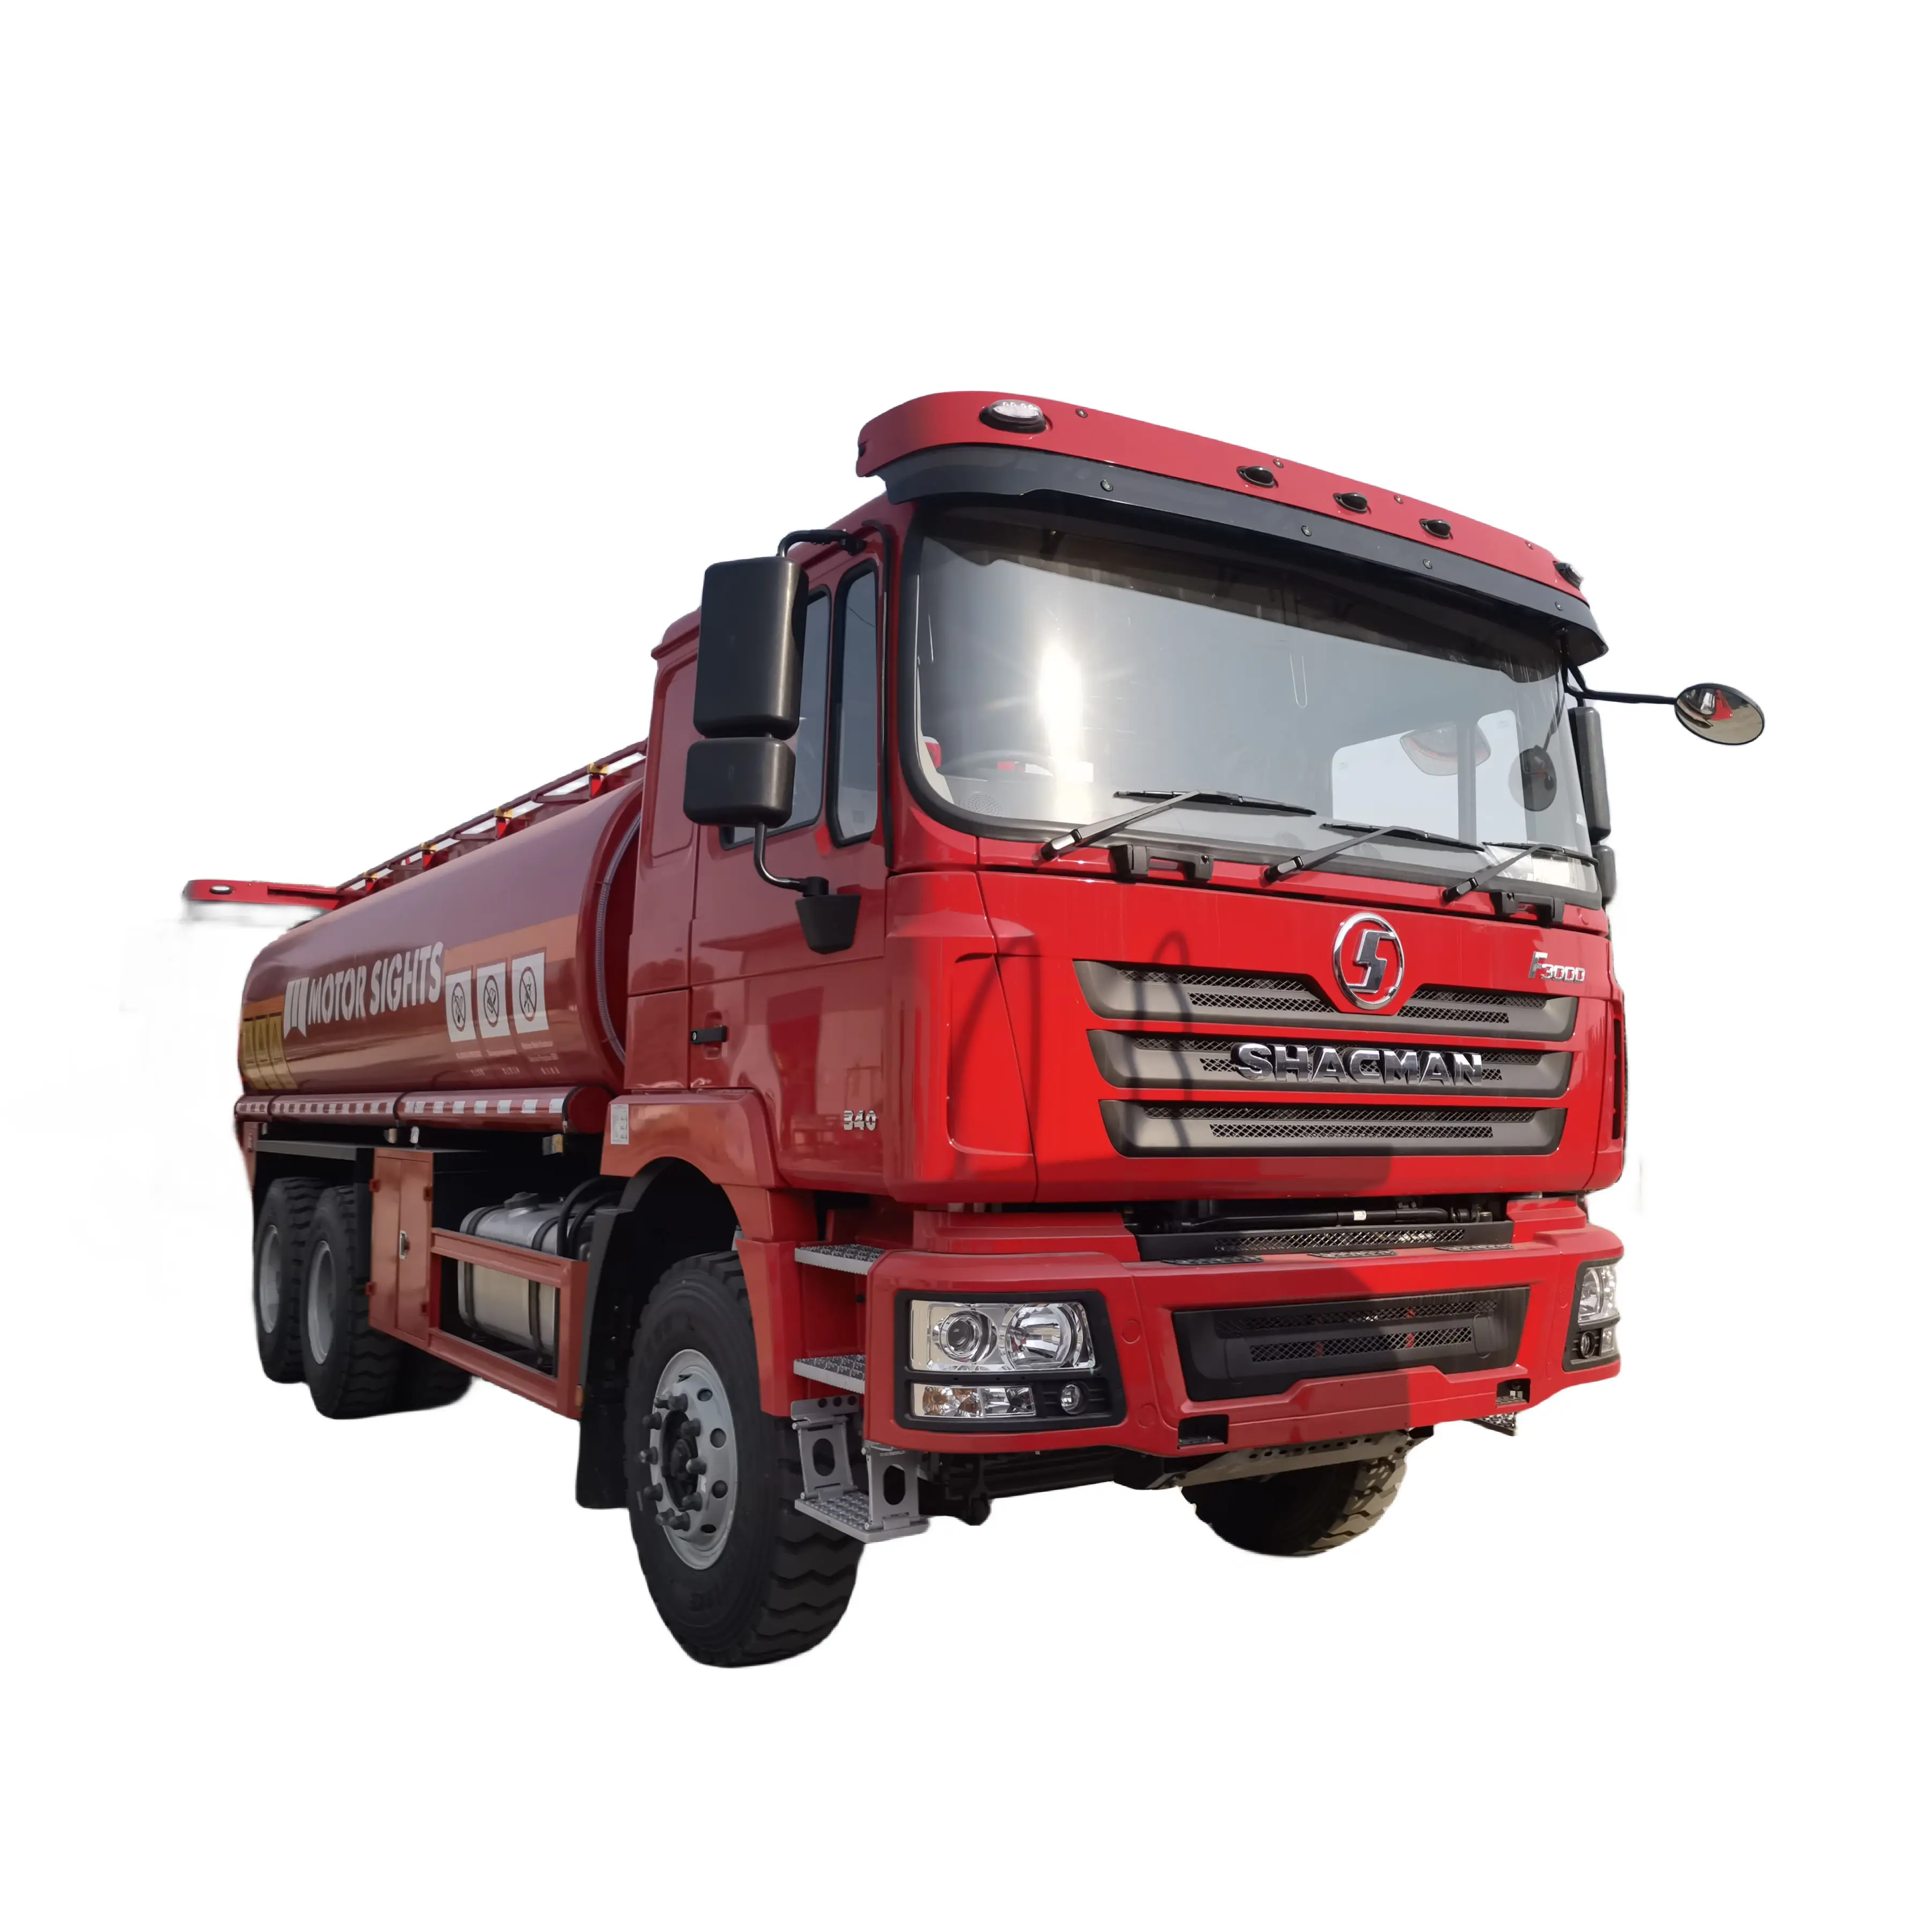 Shacman F3000 20000 Liters Fuel Tanker RHD Diesel Oil Capacity Fuel Tanker Truck